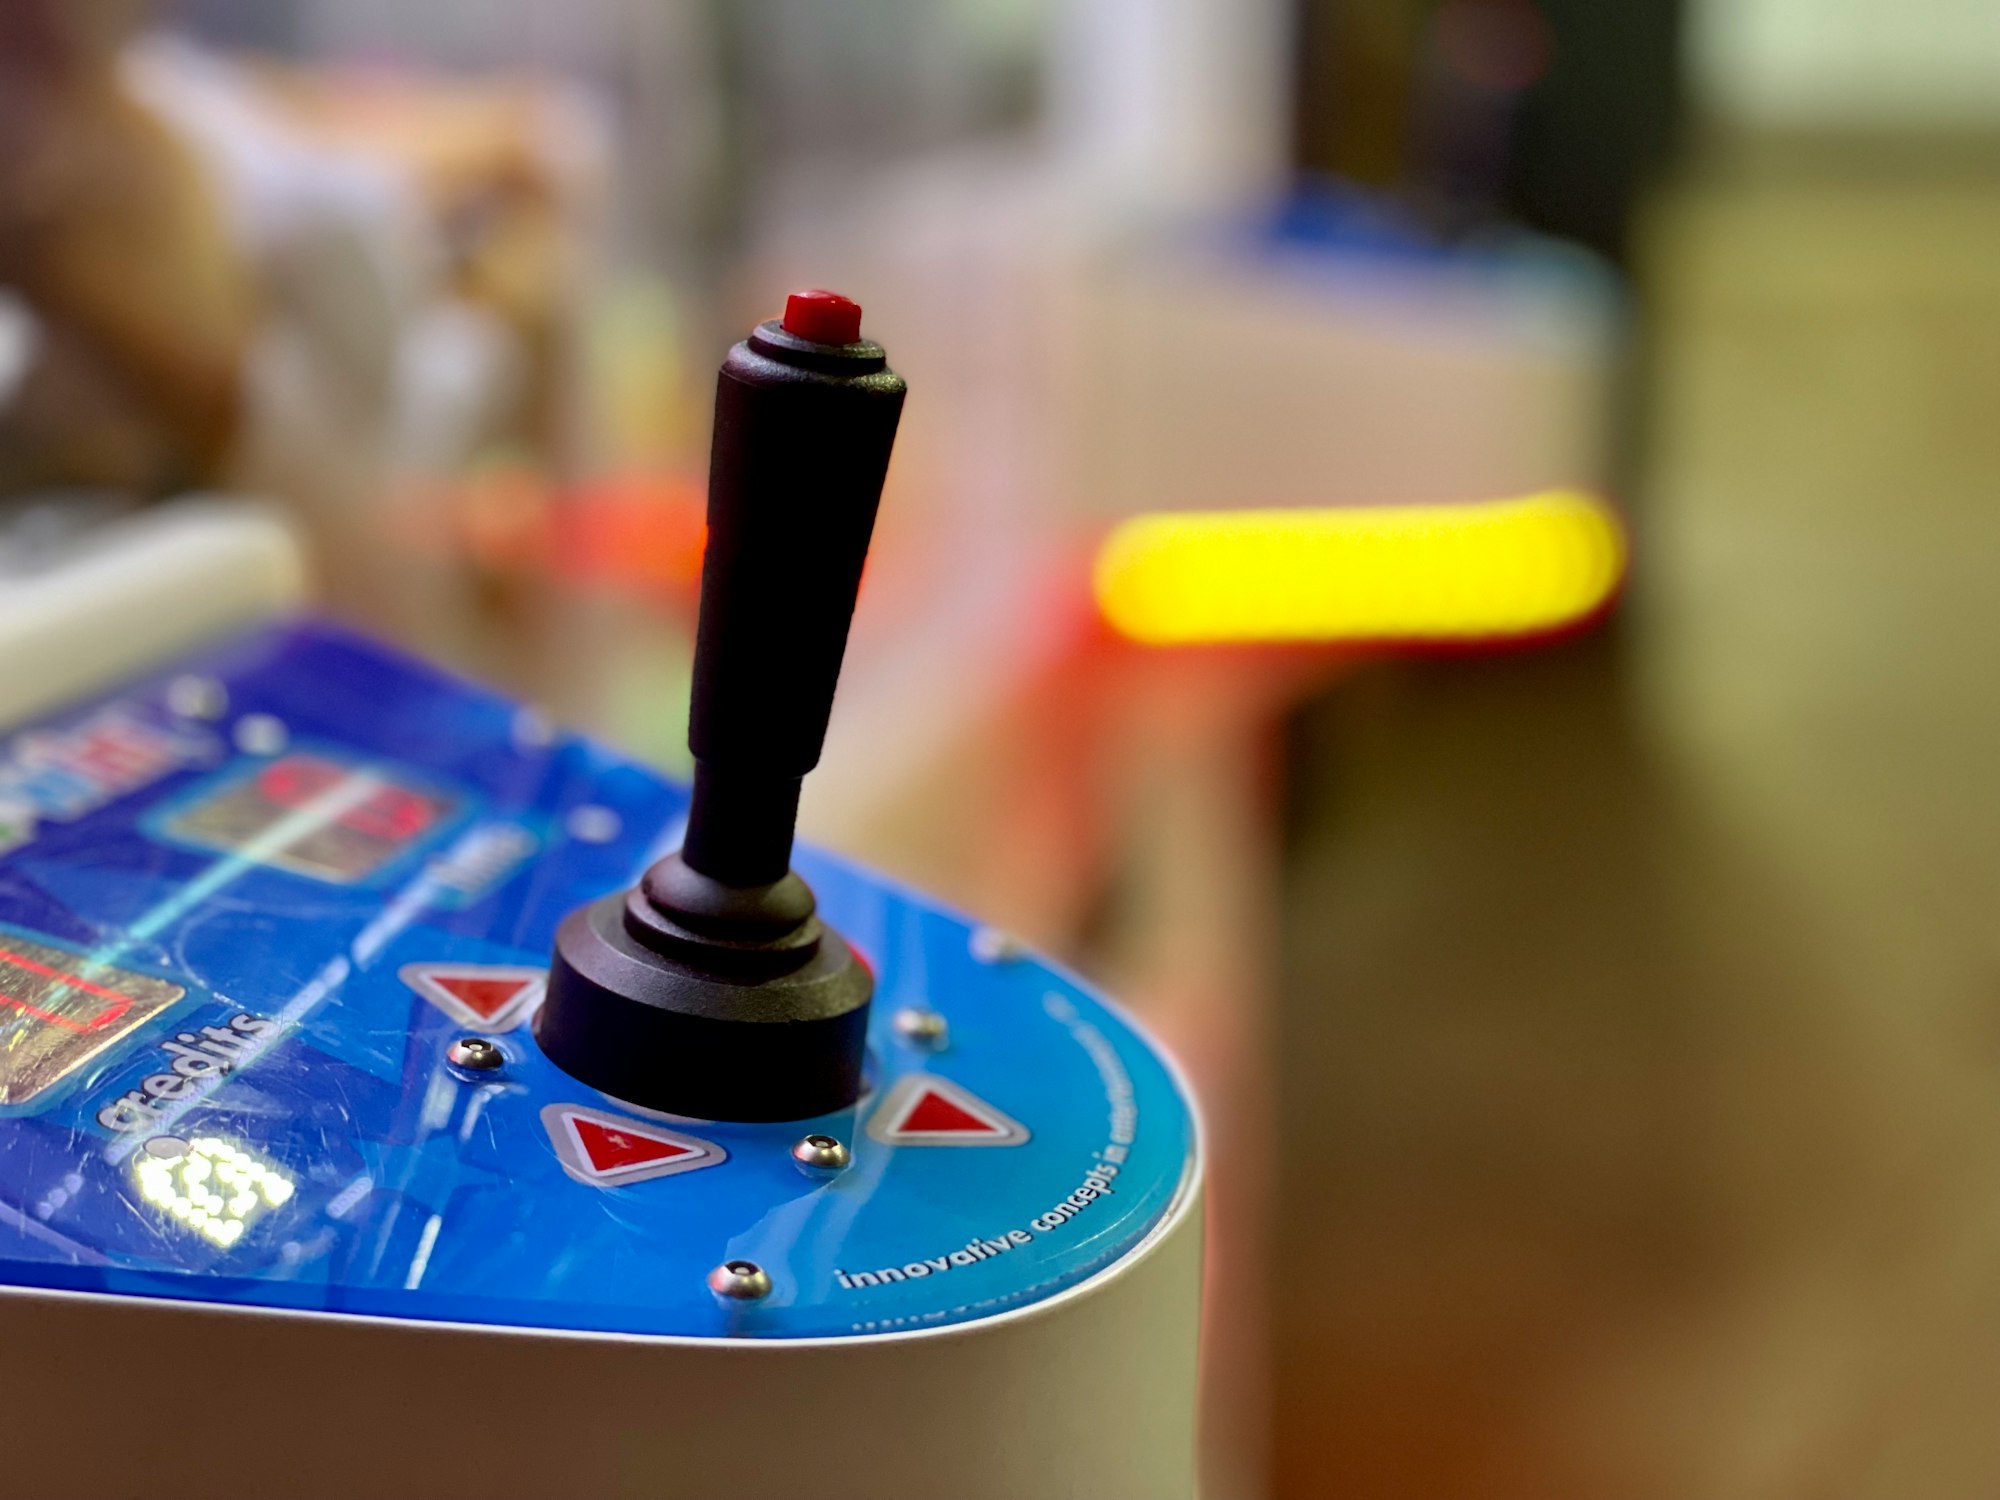 Close-up image of a gaming joystick